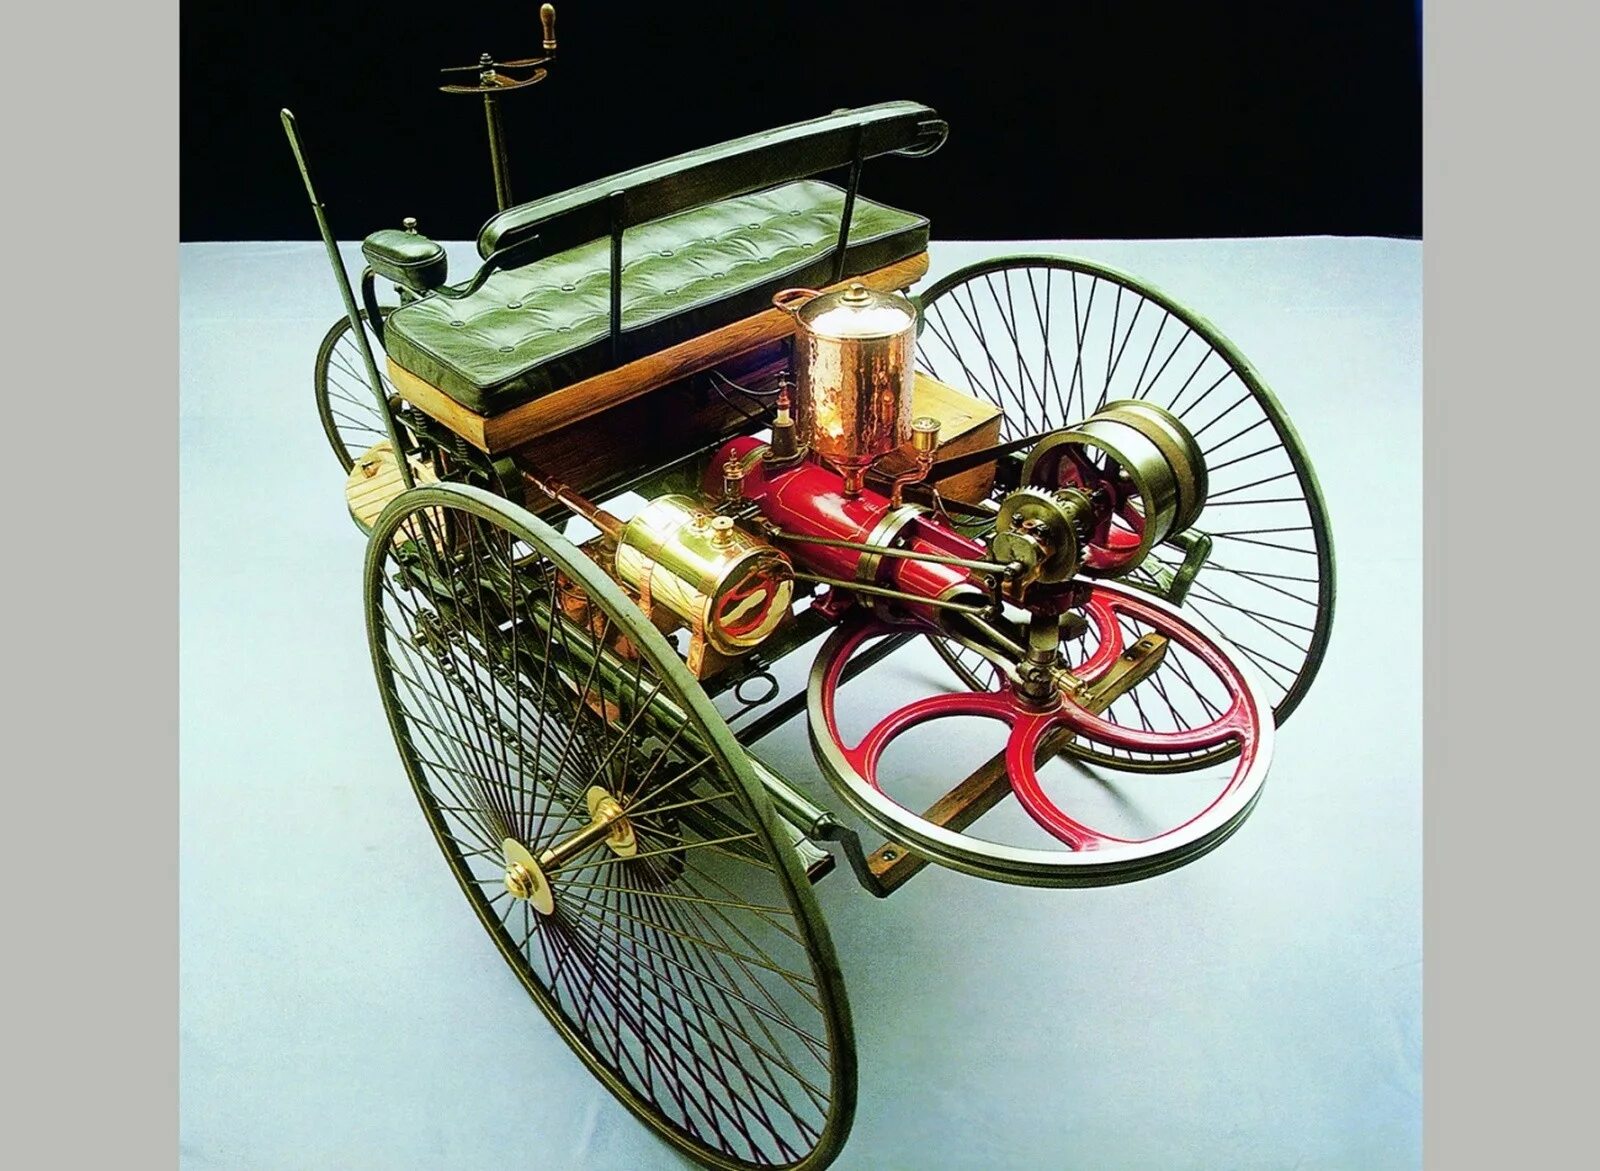 Первый автомобиль бенца. Benz Patent-Motorwagen Карлом Бенцем. Benz Patent-Motorwagen 1886.